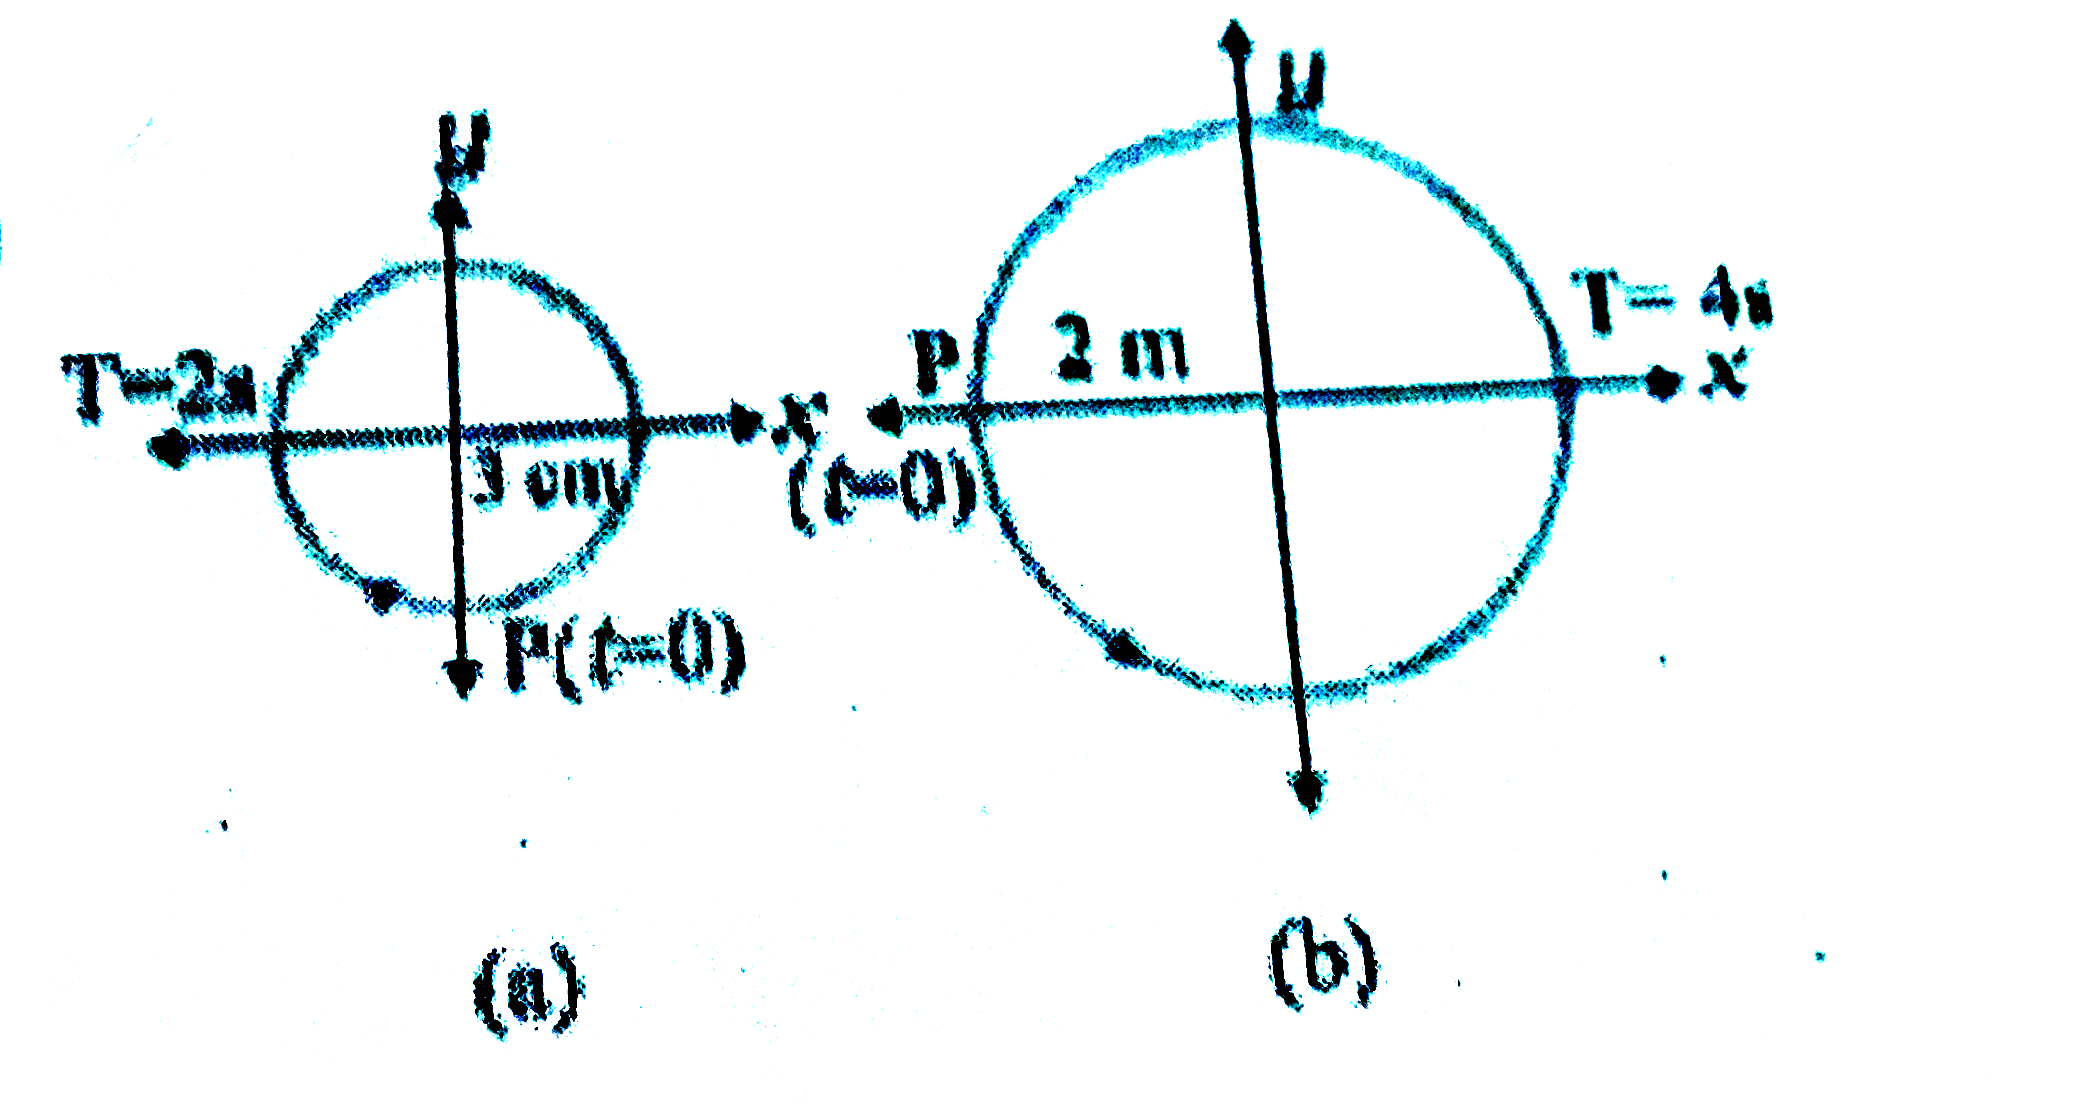 चित्र में दिए दो आरेख  दो वर्तुल गतियों  के तदनुरूपी  है |  प्रत्येक आरेख  पर वृत्त की त्रिज्या, परिक्रमण-काल, आरंभिक स्थिति ओर परिक्रमण  की दिशा दर्शायी गई है | प्रत्येक परिक्रमण  करते कण के त्रिज्य-सदिश  के x-अक्ष पर प्रक्षेप  की तदनुरूपी  सरल आवर्त  गति ज्ञात कीजिए |